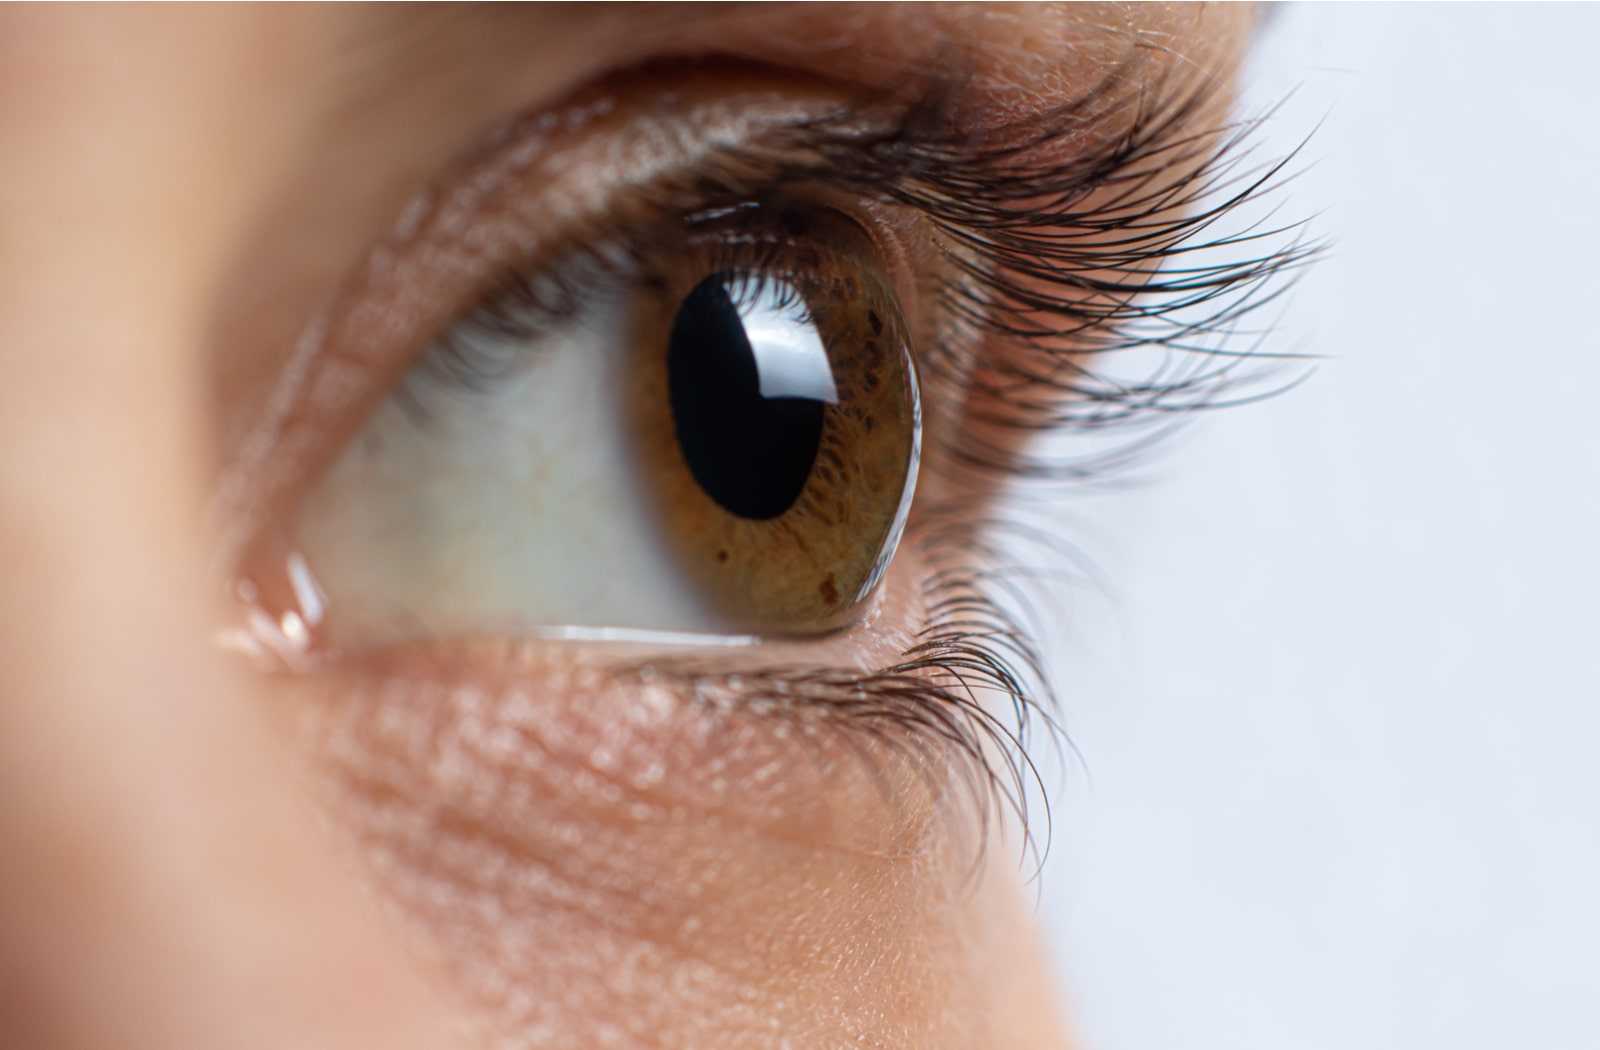 Μάτια: Οι παράγοντες που αυξάνουν τον κίνδυνο για γλαύκωμα